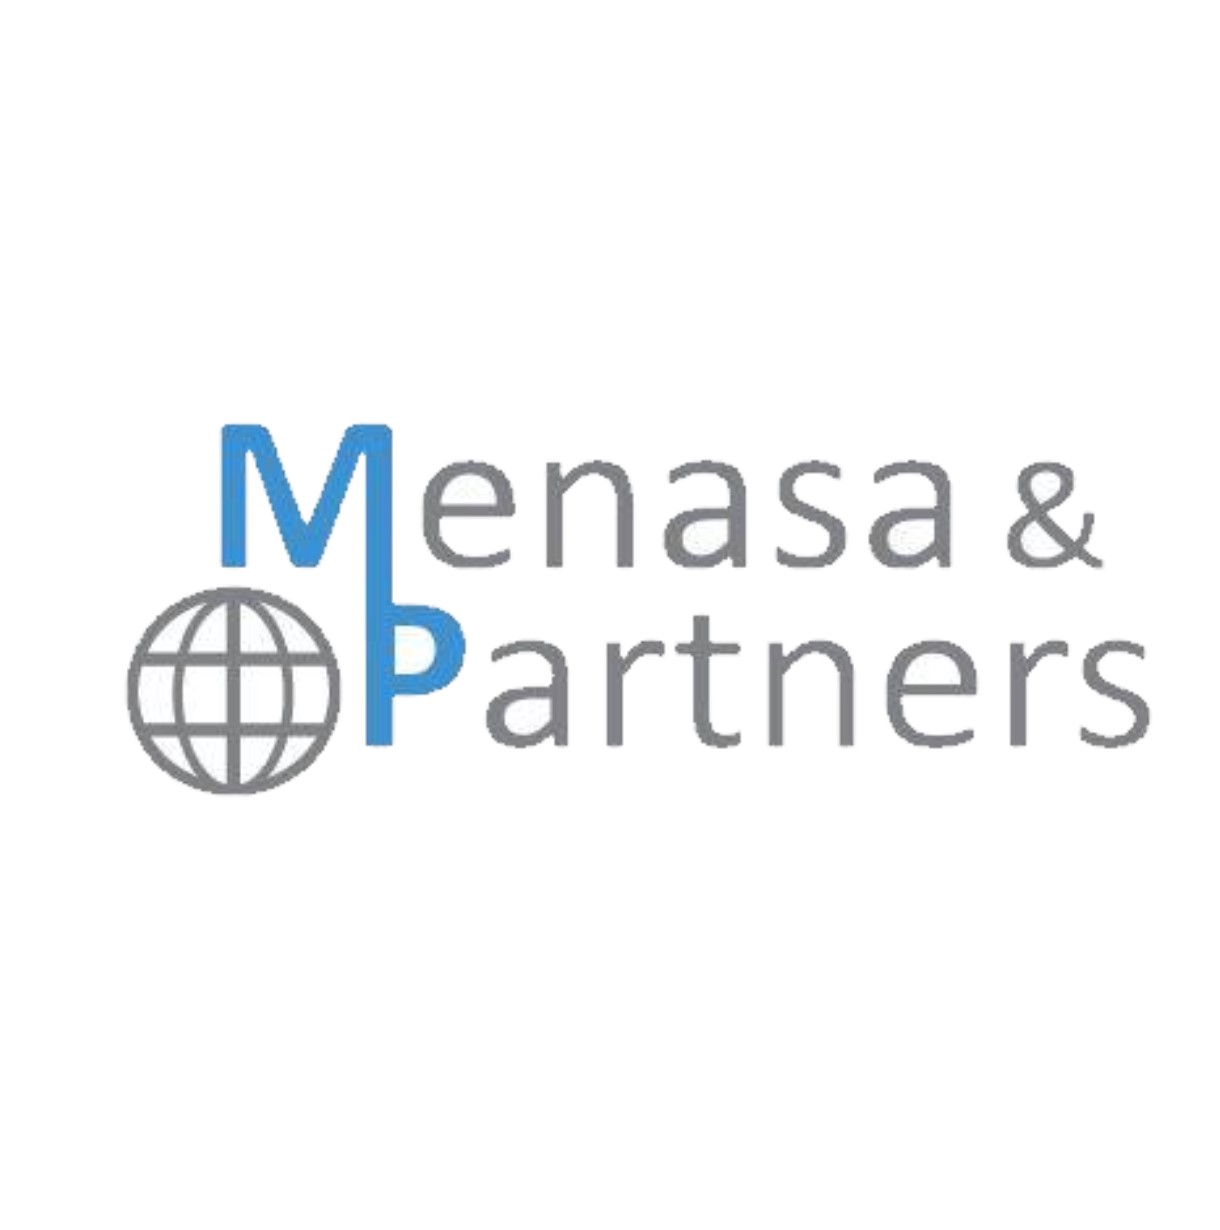 Menasa & Partners